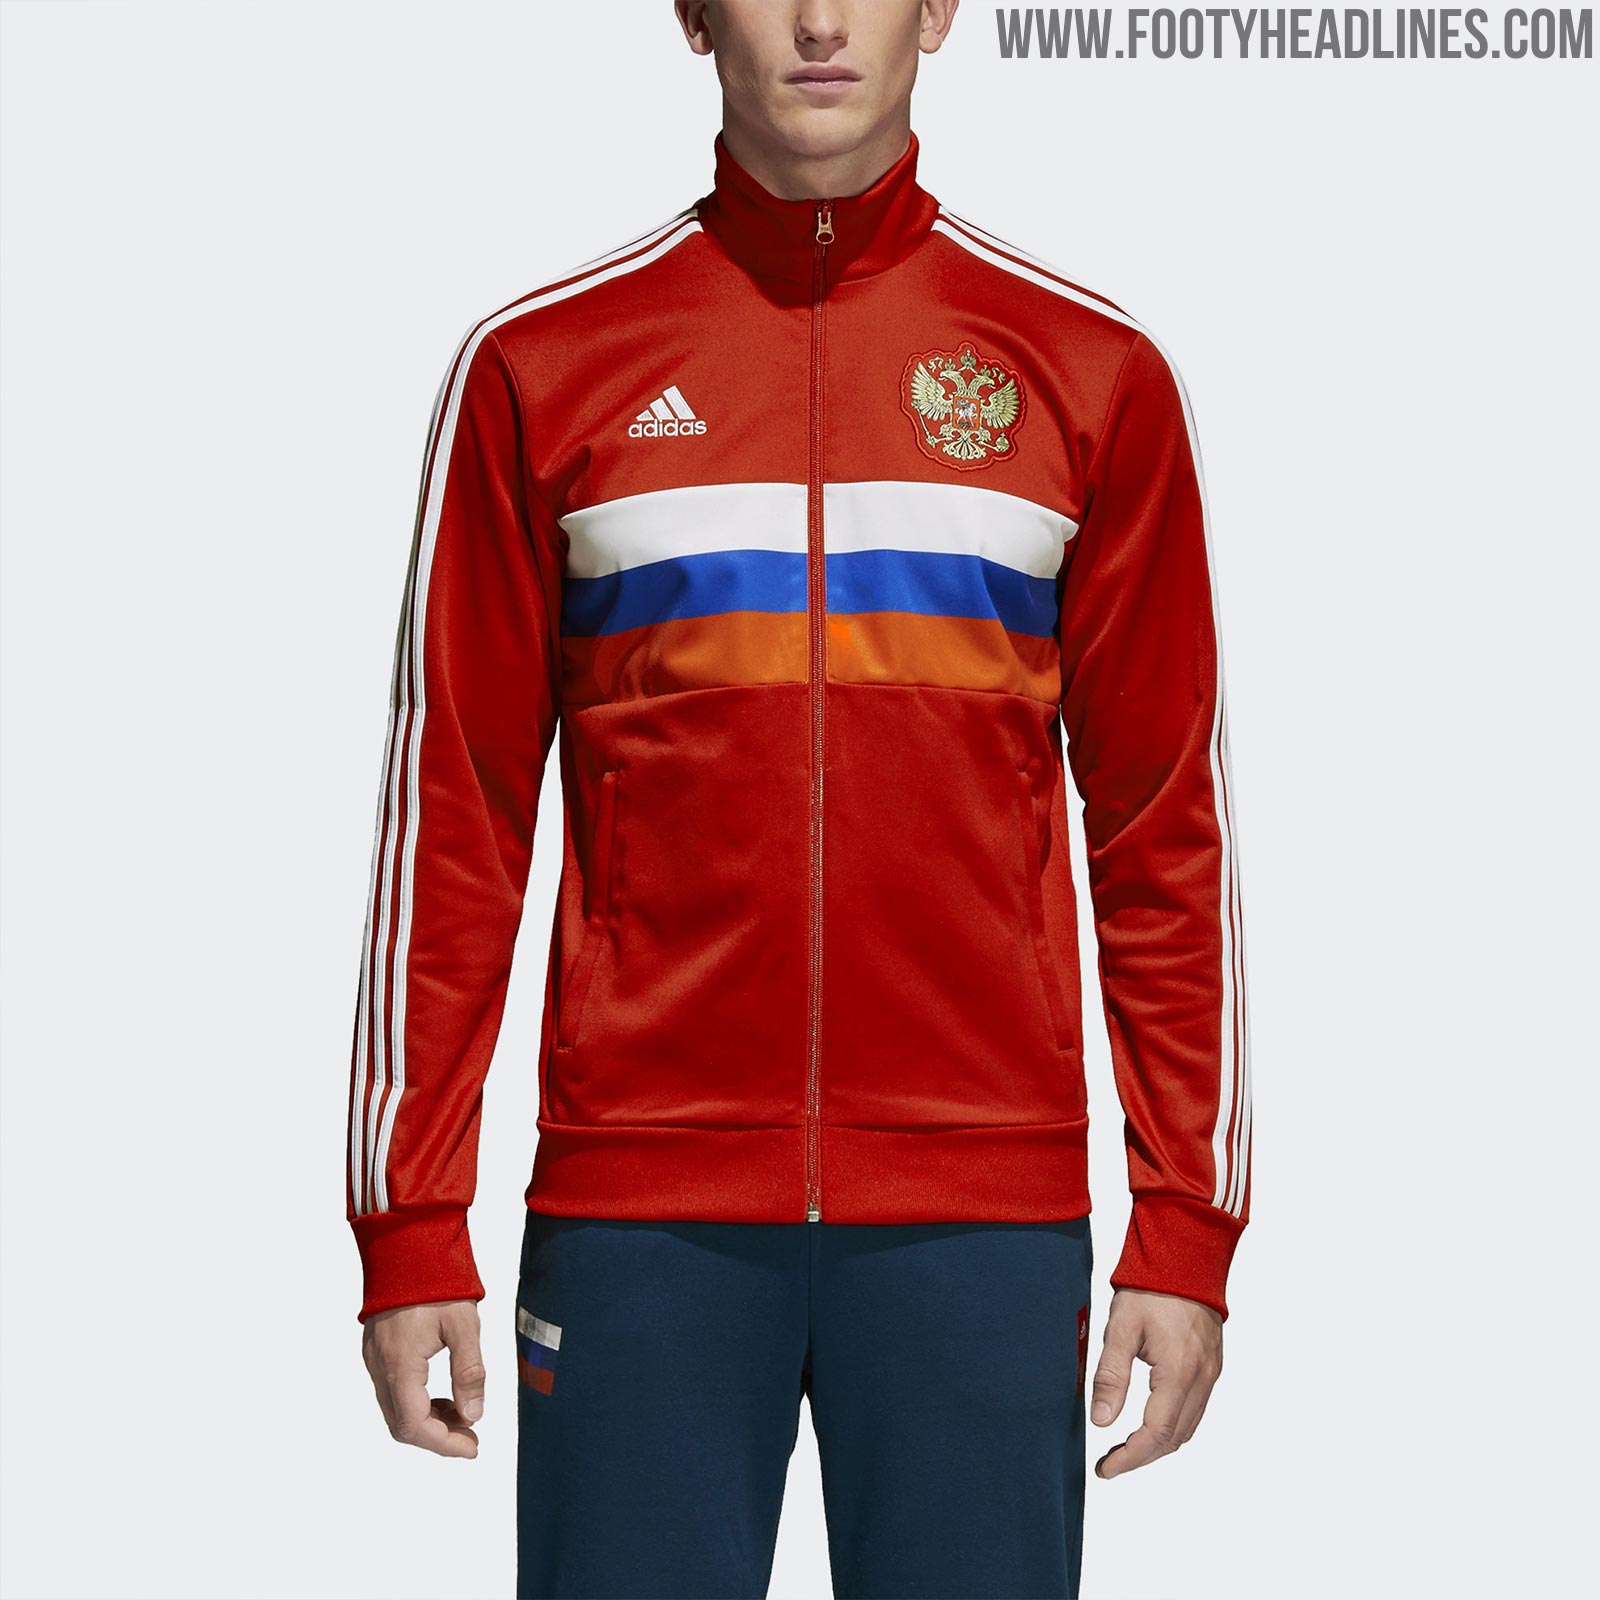 adidas jacket russia